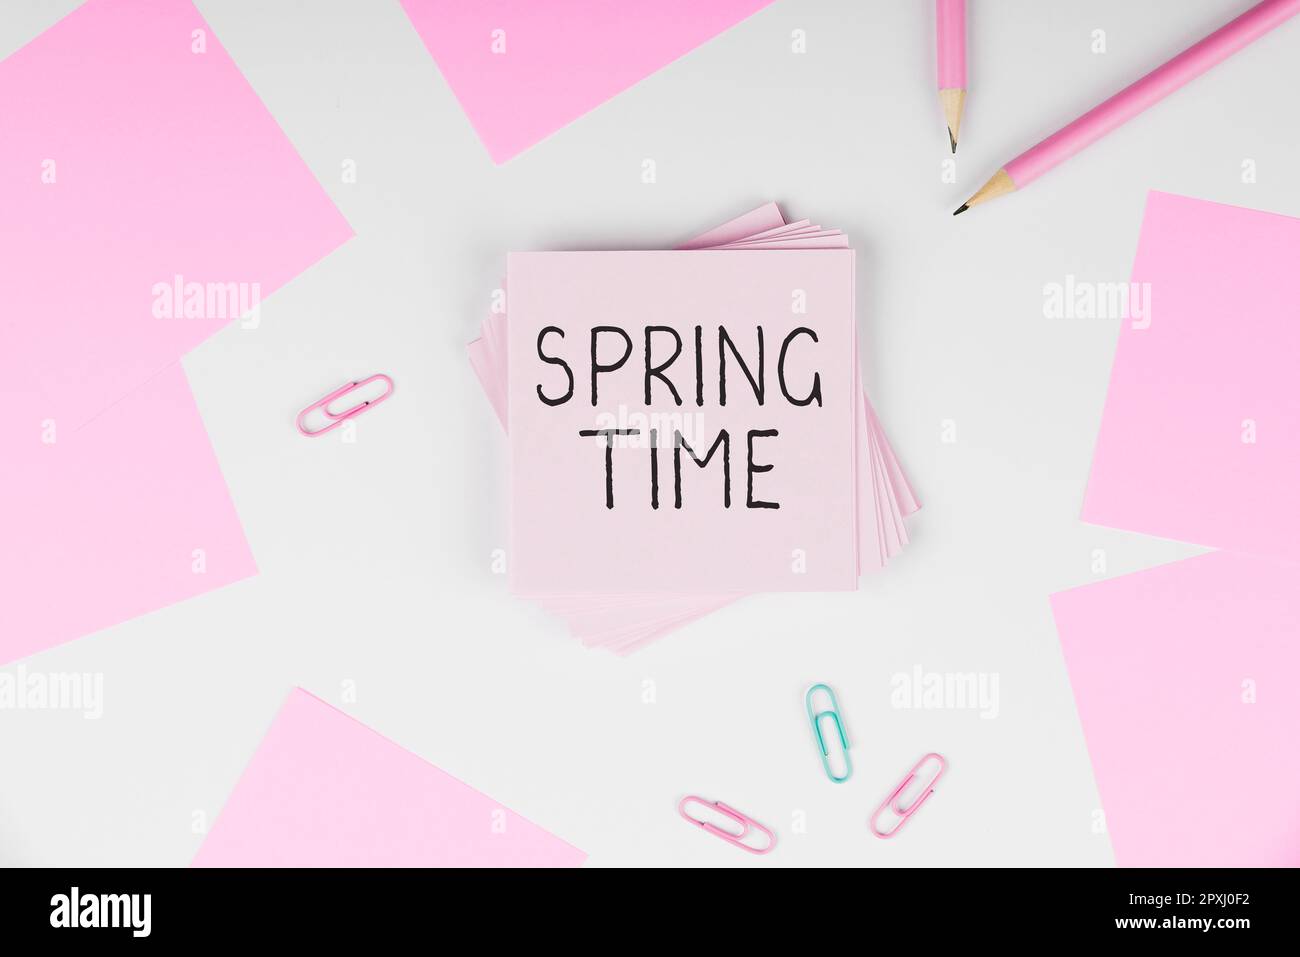 Titolo concettuale Spring Time, Business idea stagione temperata dell'anno identificata da una rinascita di piante Foto Stock